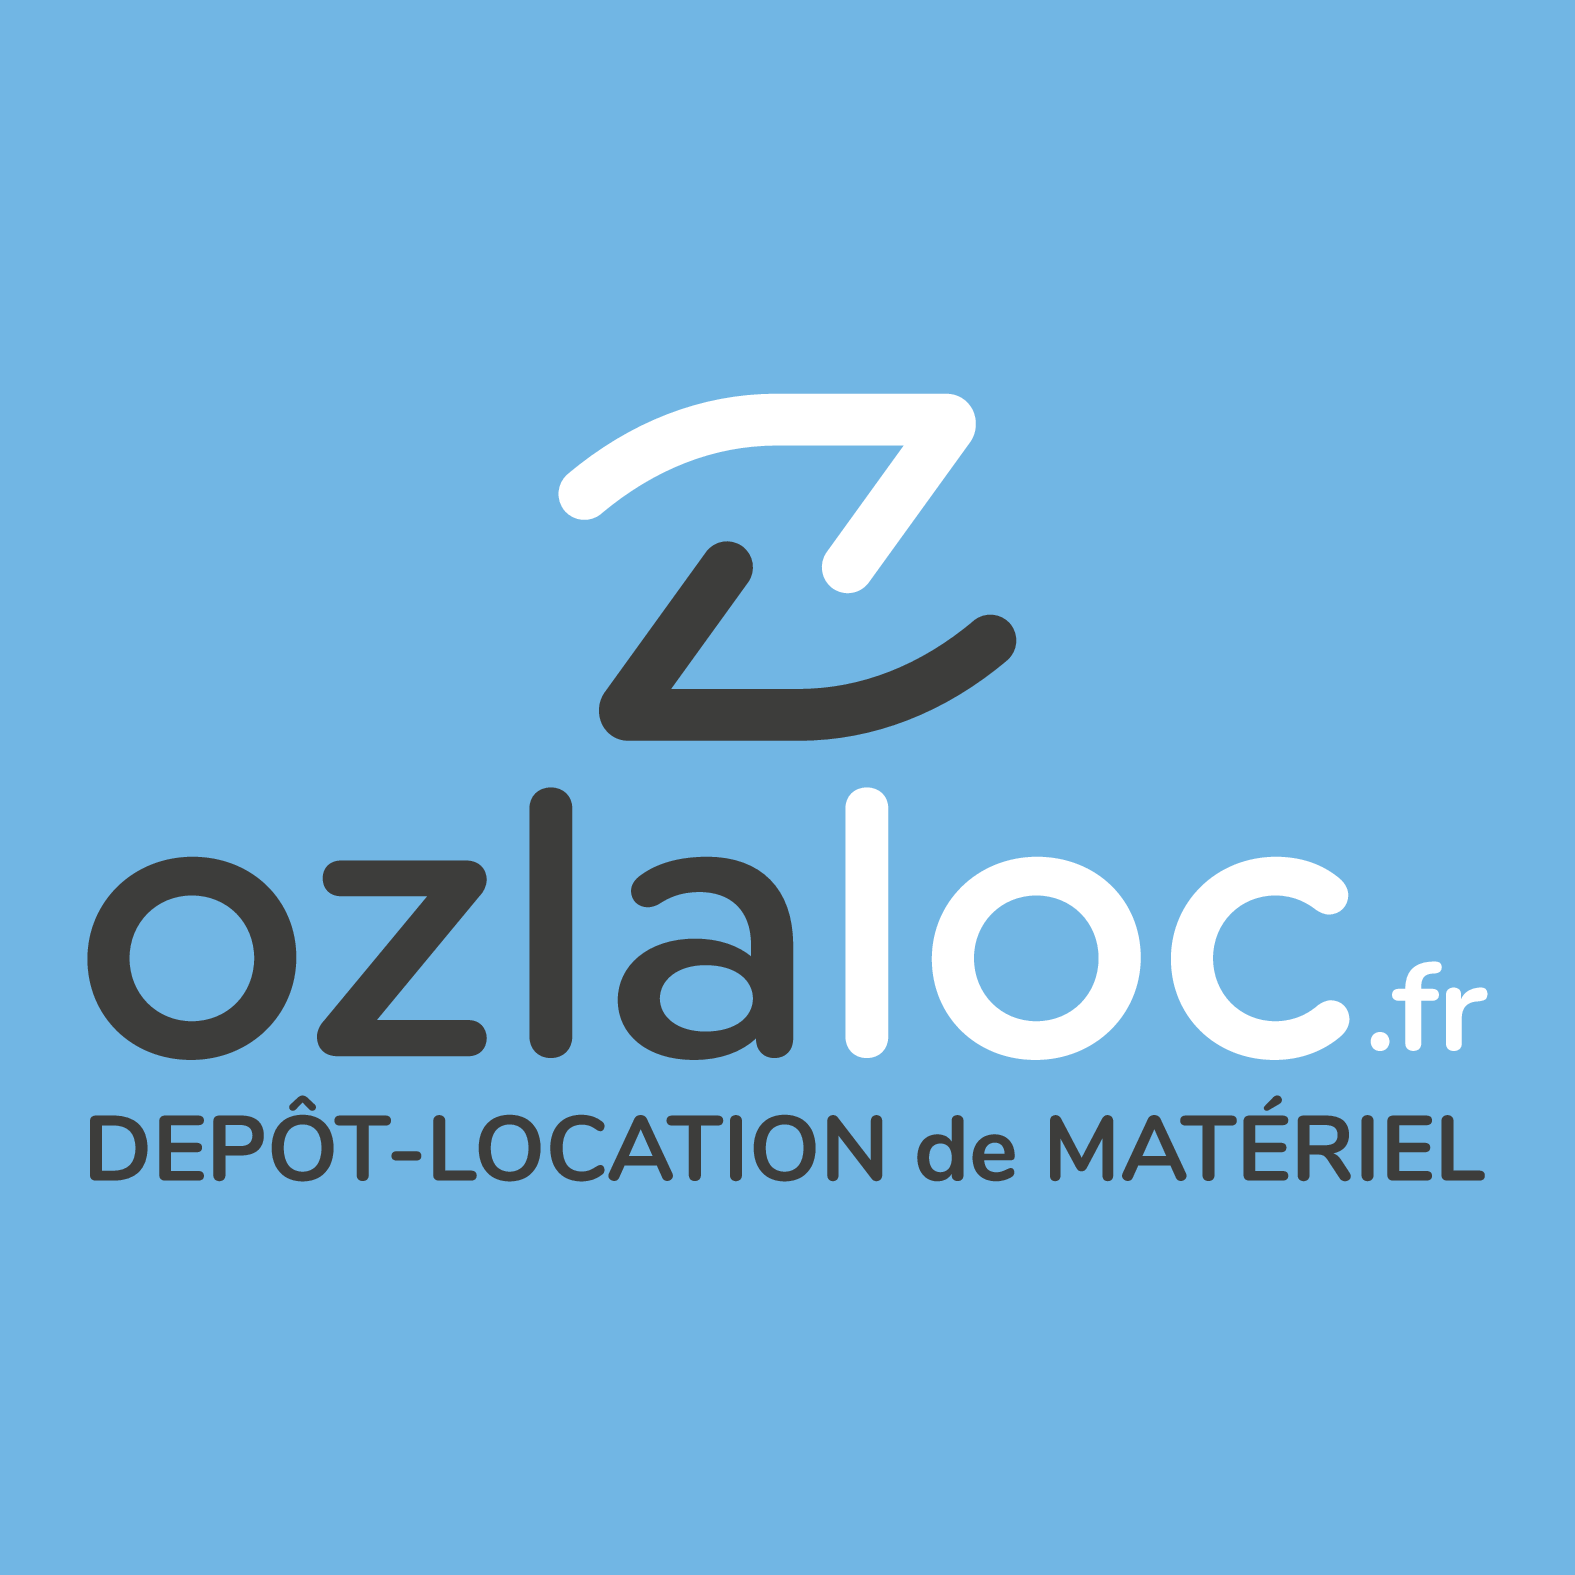 Location aspirateur eau et poussière 30L - Ozlaloc